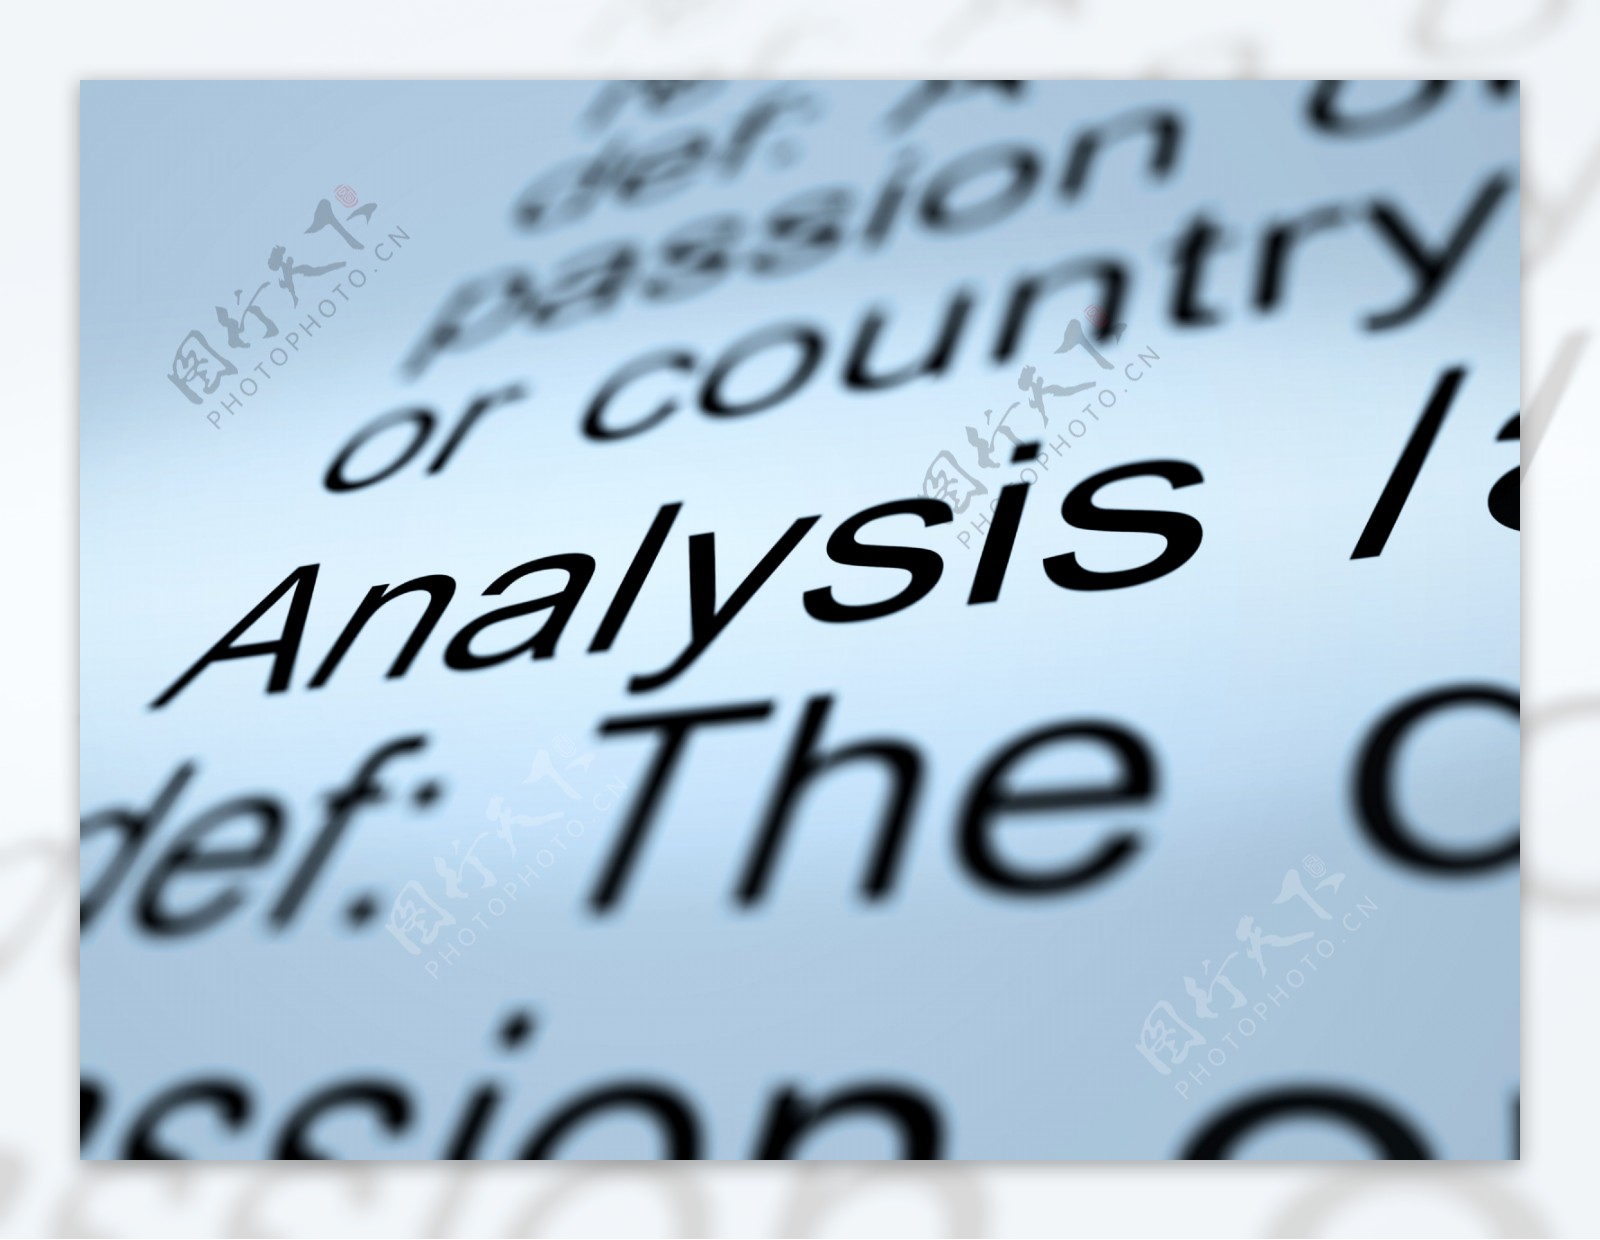 分析定义特写显示探测研究或检查